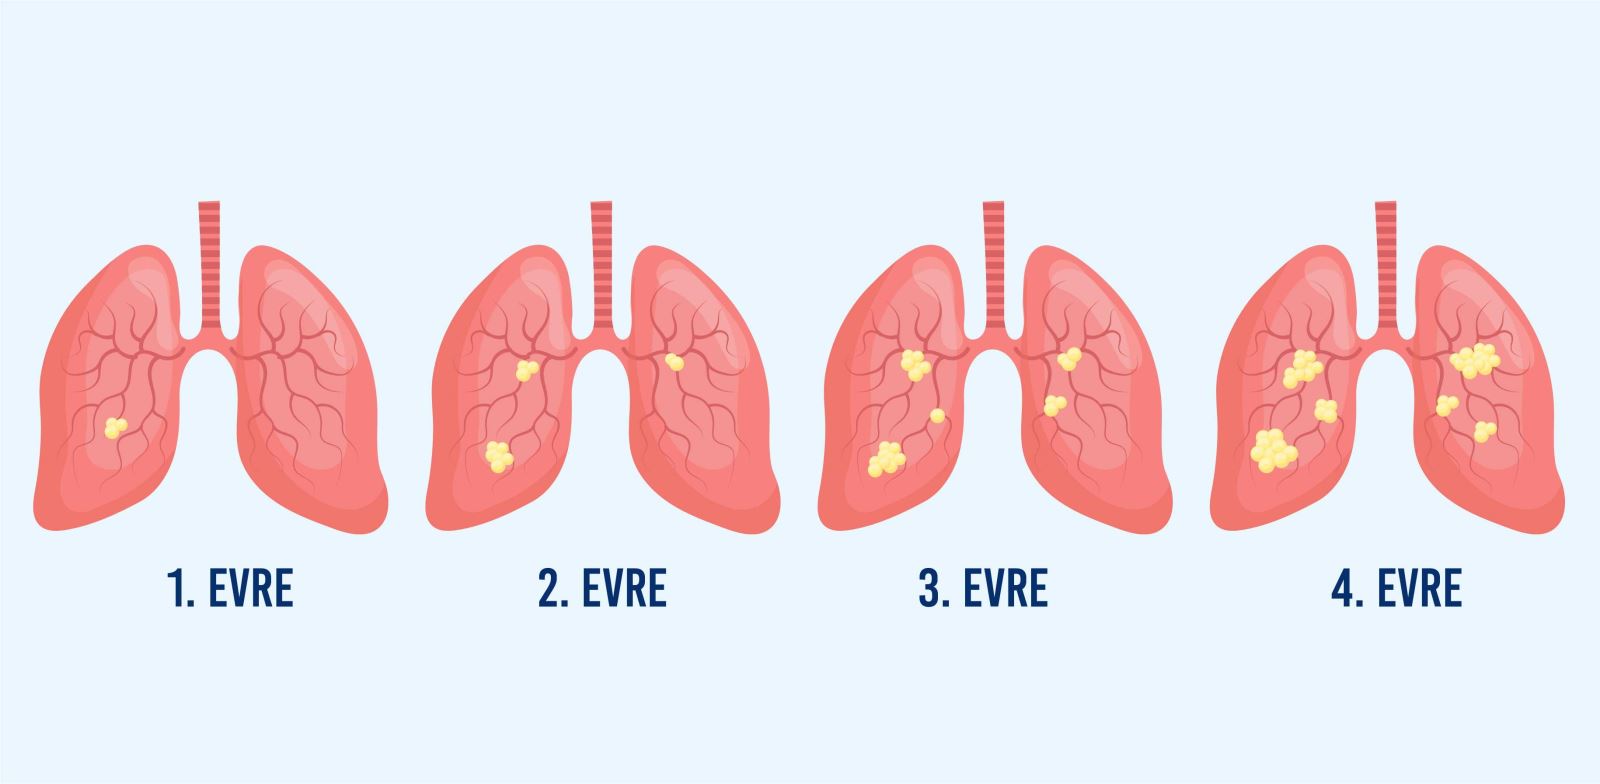 Akciğer kanserinde 4 evre vardır.